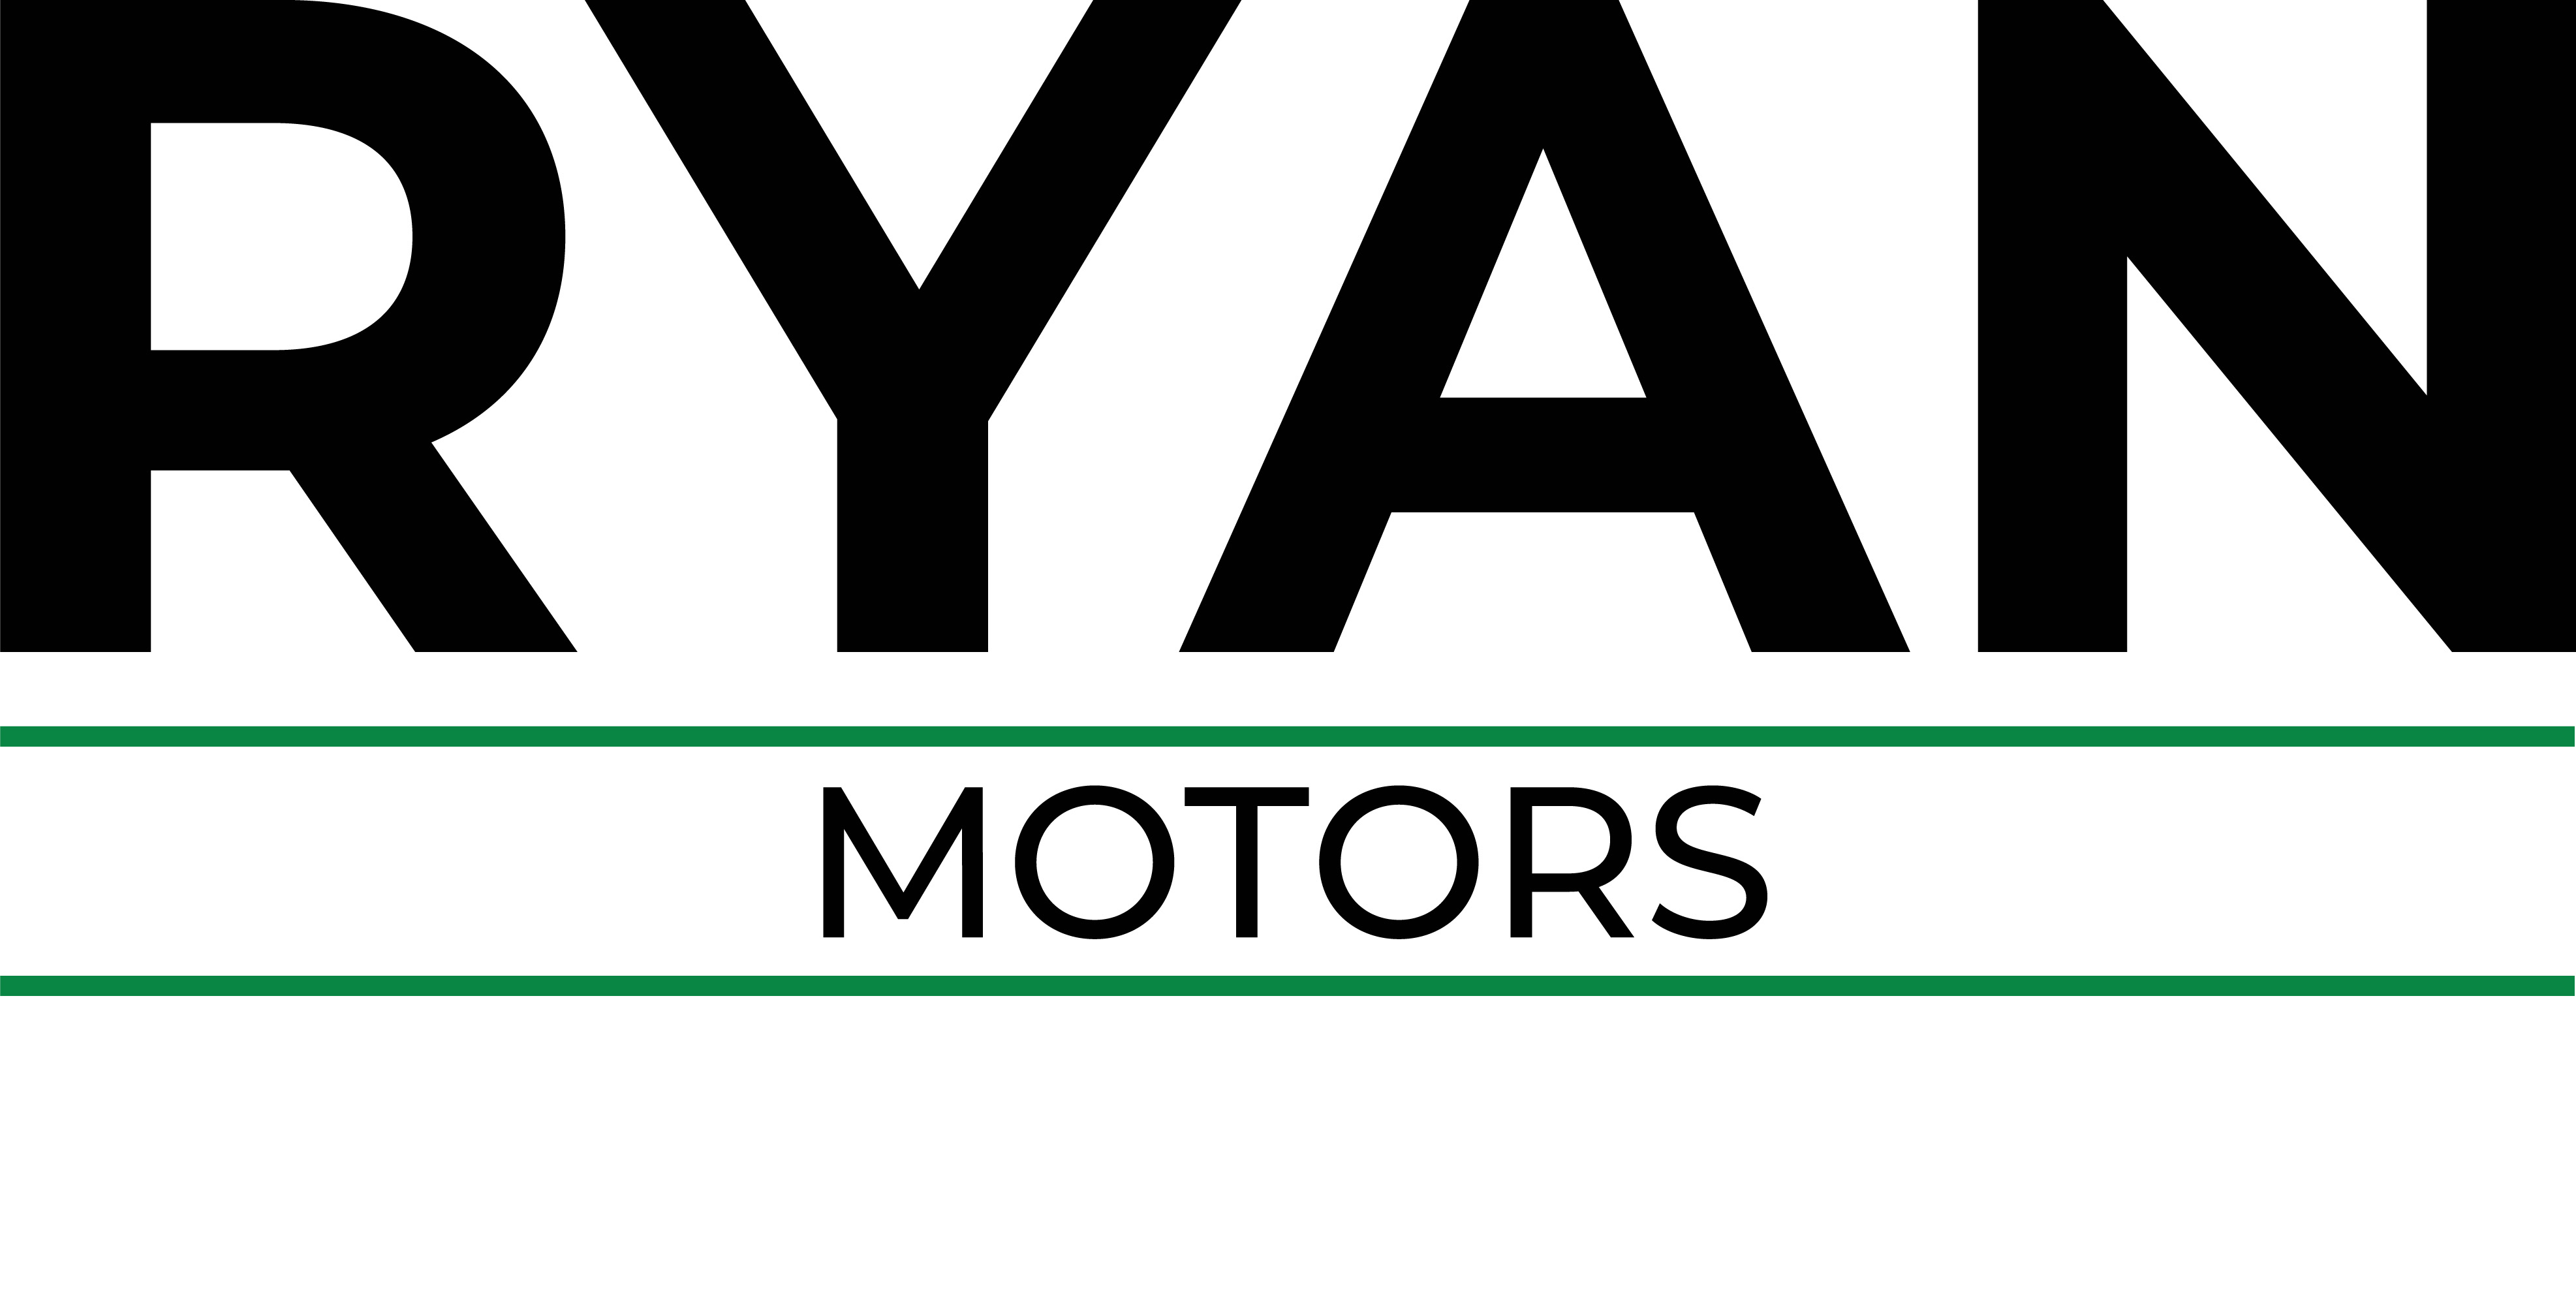 Ryan Motors